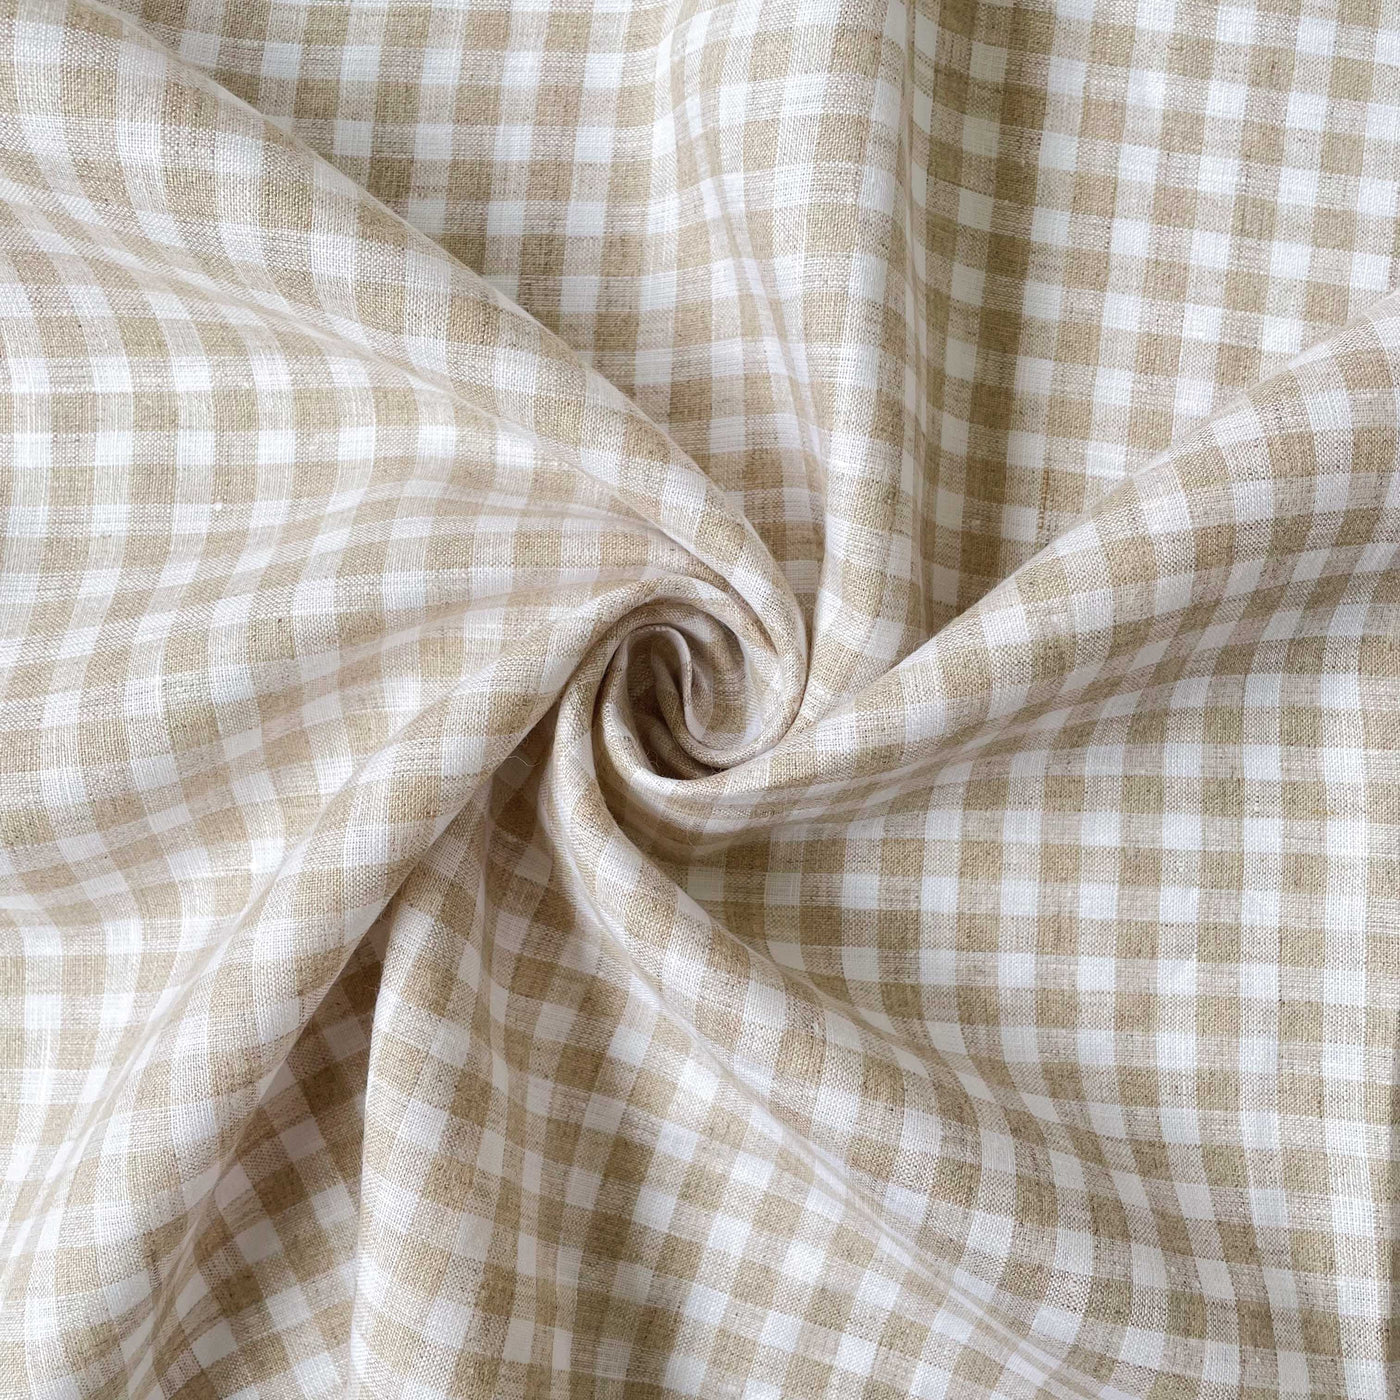 Premium Linen Fabric Fabric Tuscan Beige & White Mini Checks Premium 60 Lea Pure Linen Fabric (Width 58 Inches)